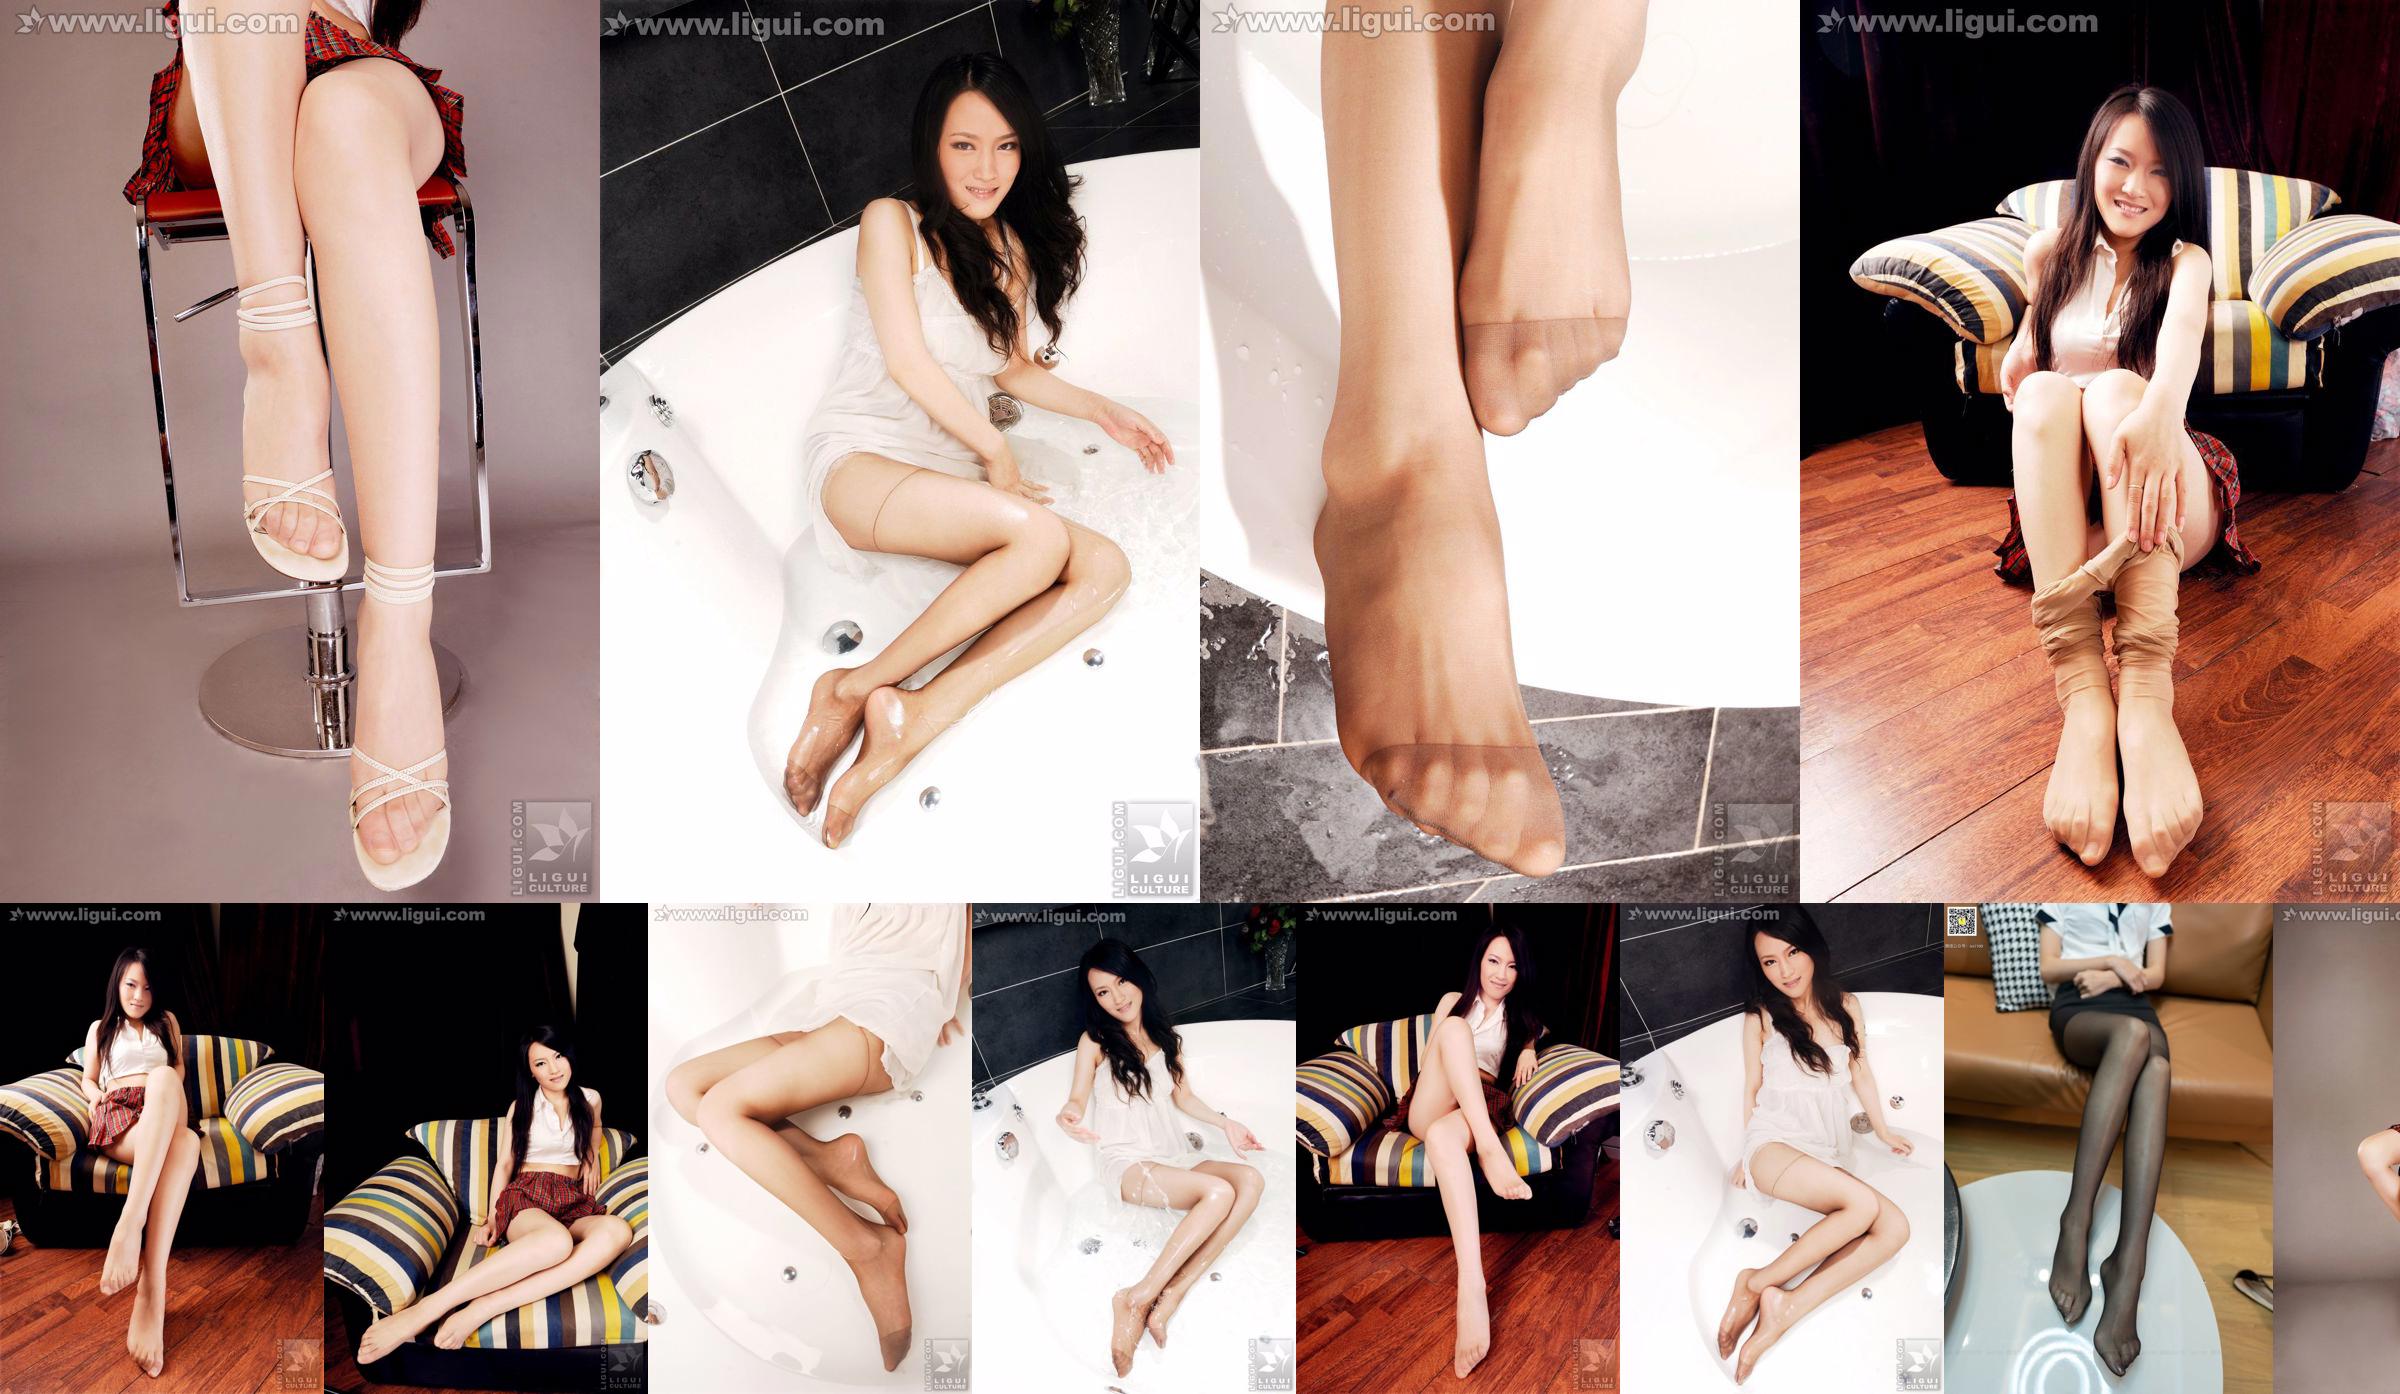 Model Wen Ting "Stoking Daging Manis dan Lucu dengan Sepatu Hak Tinggi" [丽 柜 LiGui] Foto kaki indah dan kaki giok No.7746b2 Halaman 14